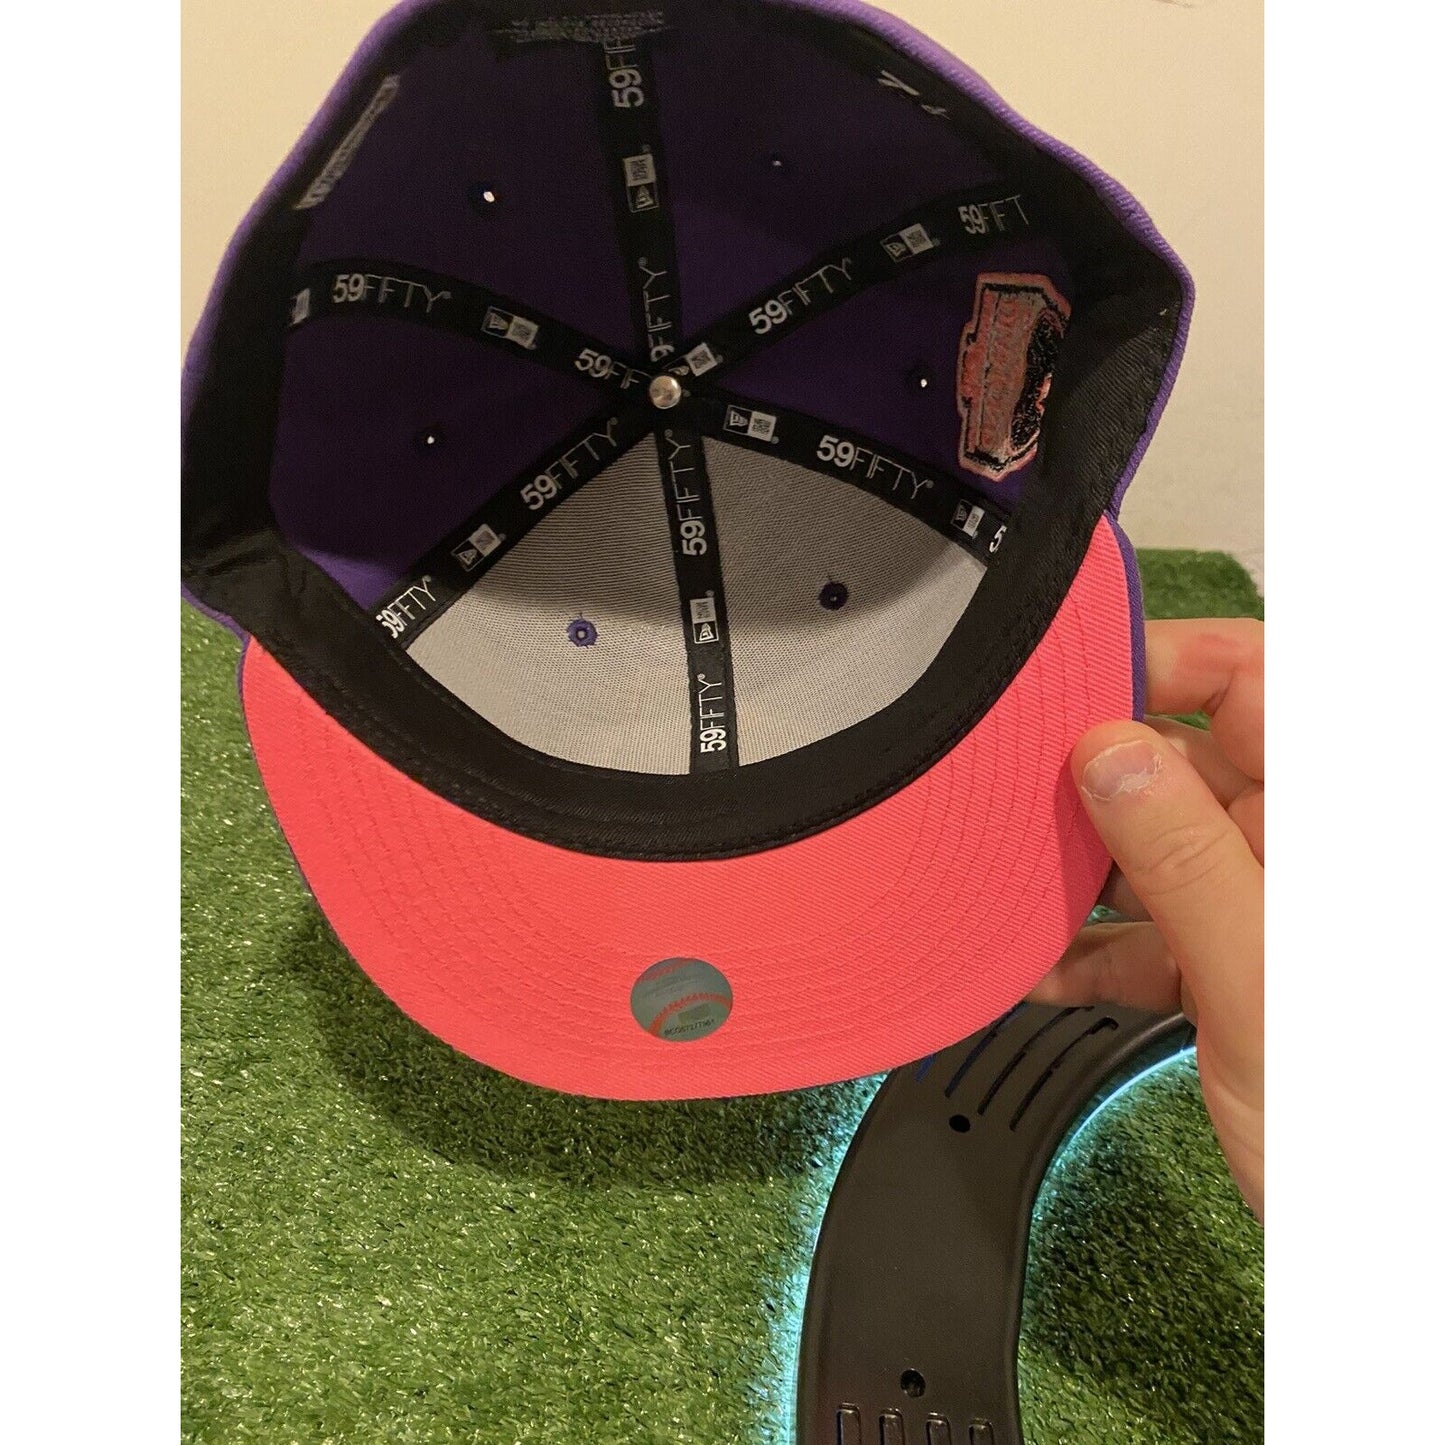 New Era 59Fifty Arizona Diamondbacks Purple/Pink Glow 98 patch fitted hat 7 1/8